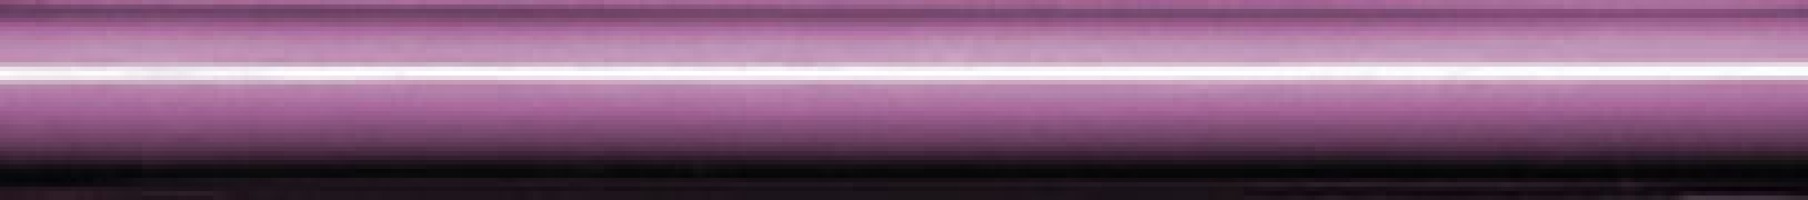 Бордюр Нефрит-Керамика Толедо фиолетовый 20x1.6 13-01-1-10-41-55-002-0